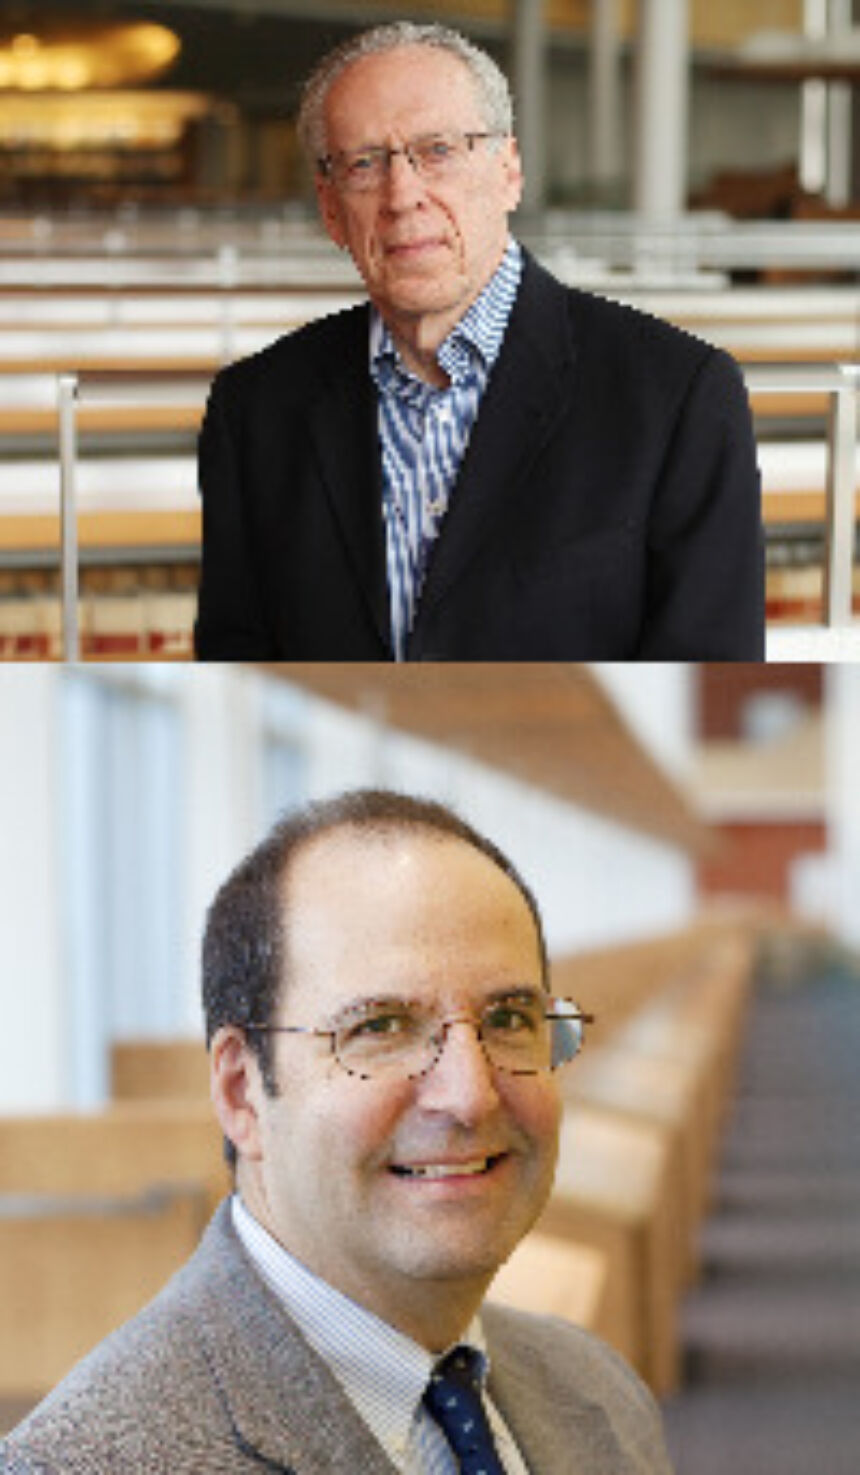 Professors Dennis C. Jett and Scott Sigmund Gartner